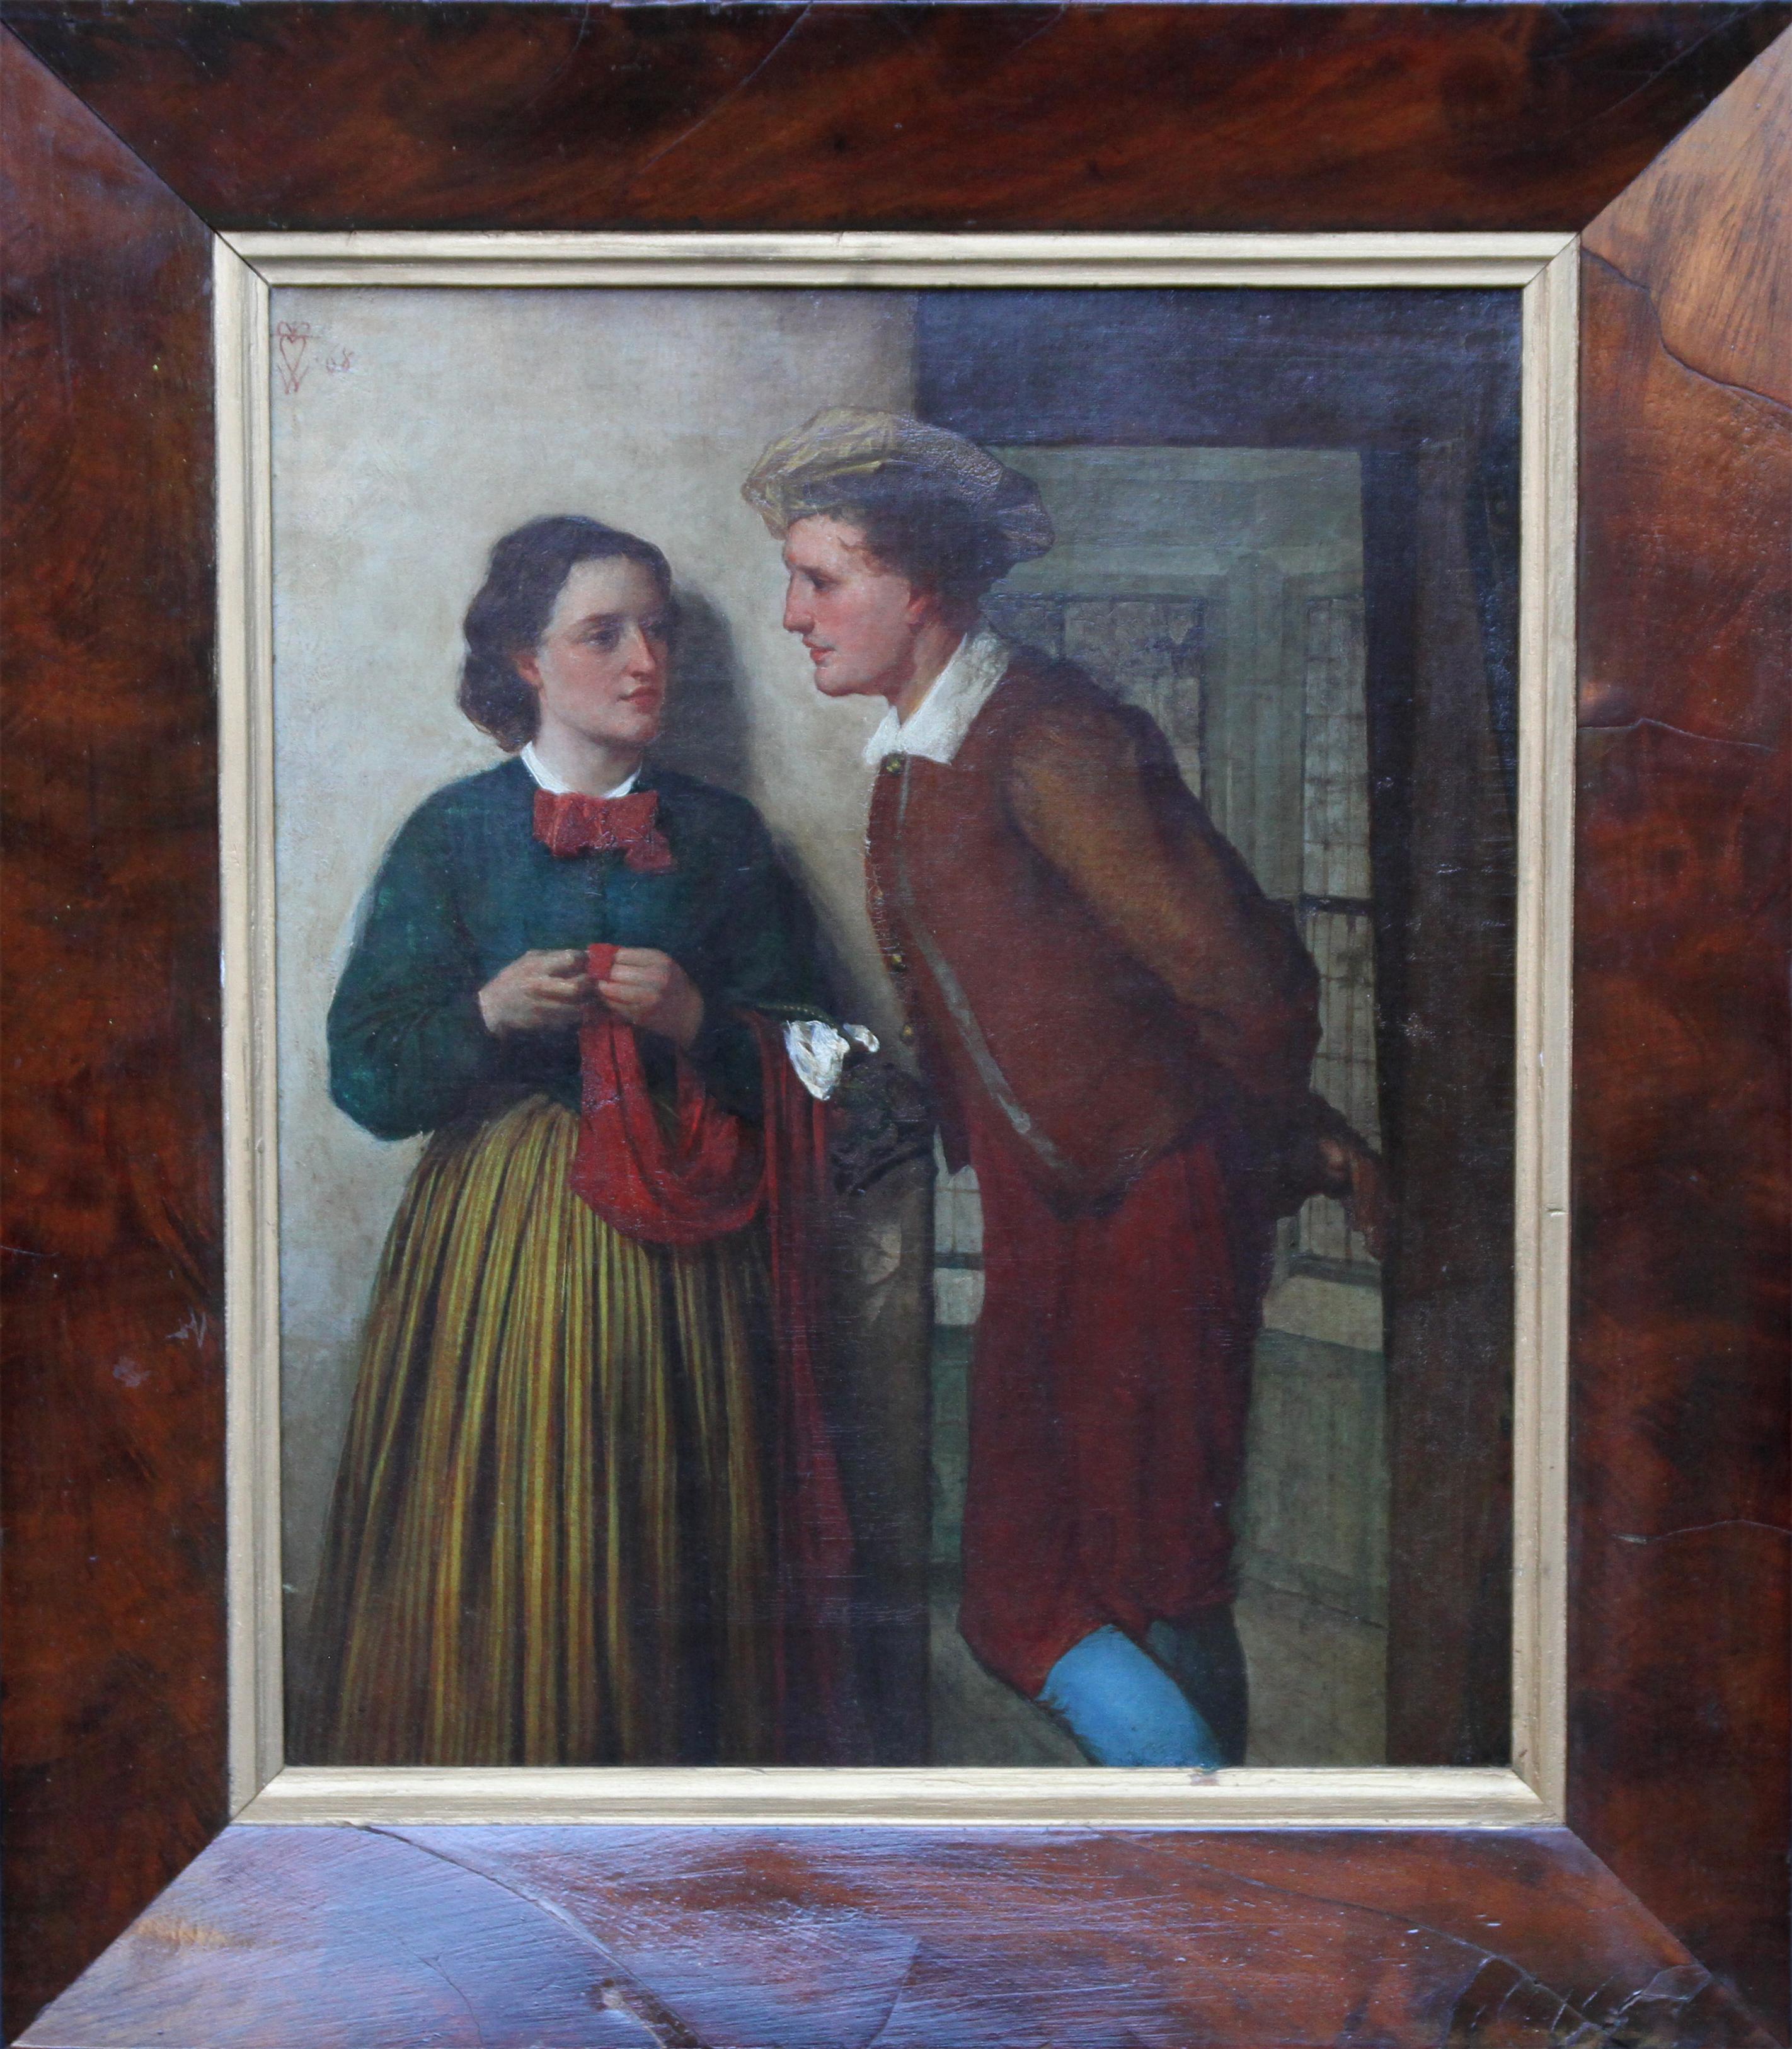 William Fettes Douglas Portrait Painting – The Gossip – schottisches viktorianisches Ölgemälde eines jungen romantischen Paares aus dem 19. Jahrhundert